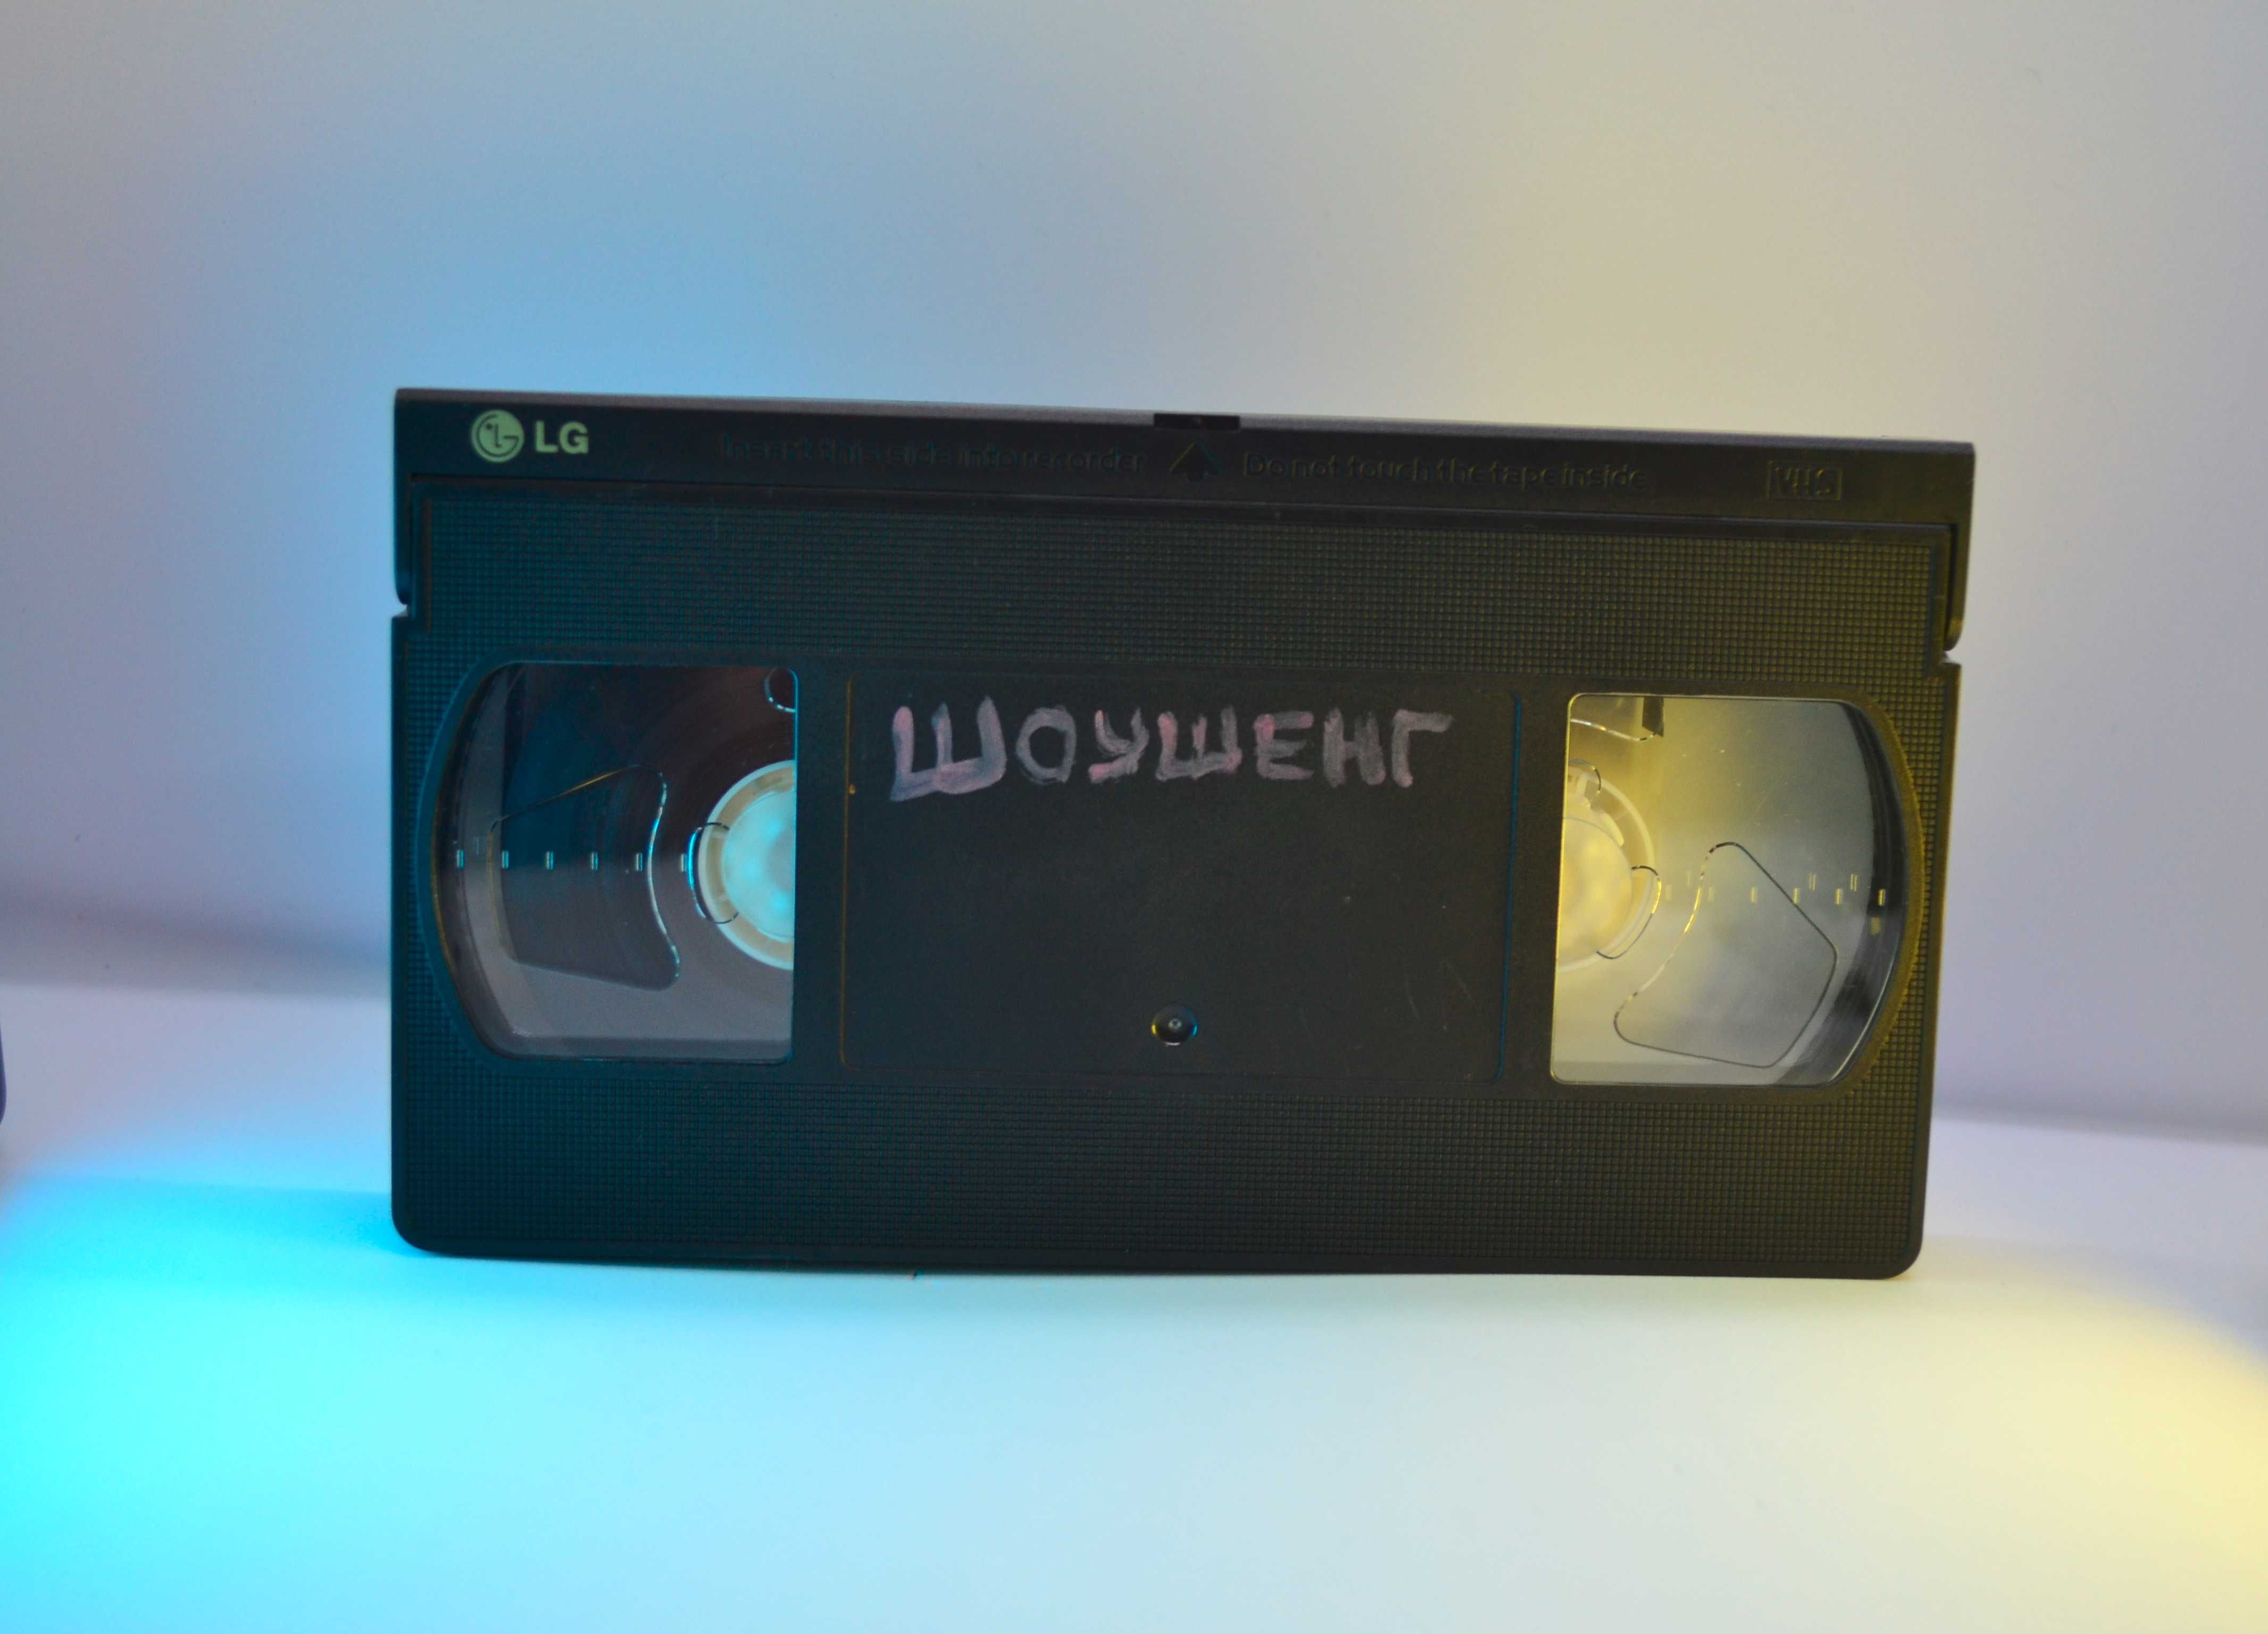 Побег из Шоушенка (VHS касета)